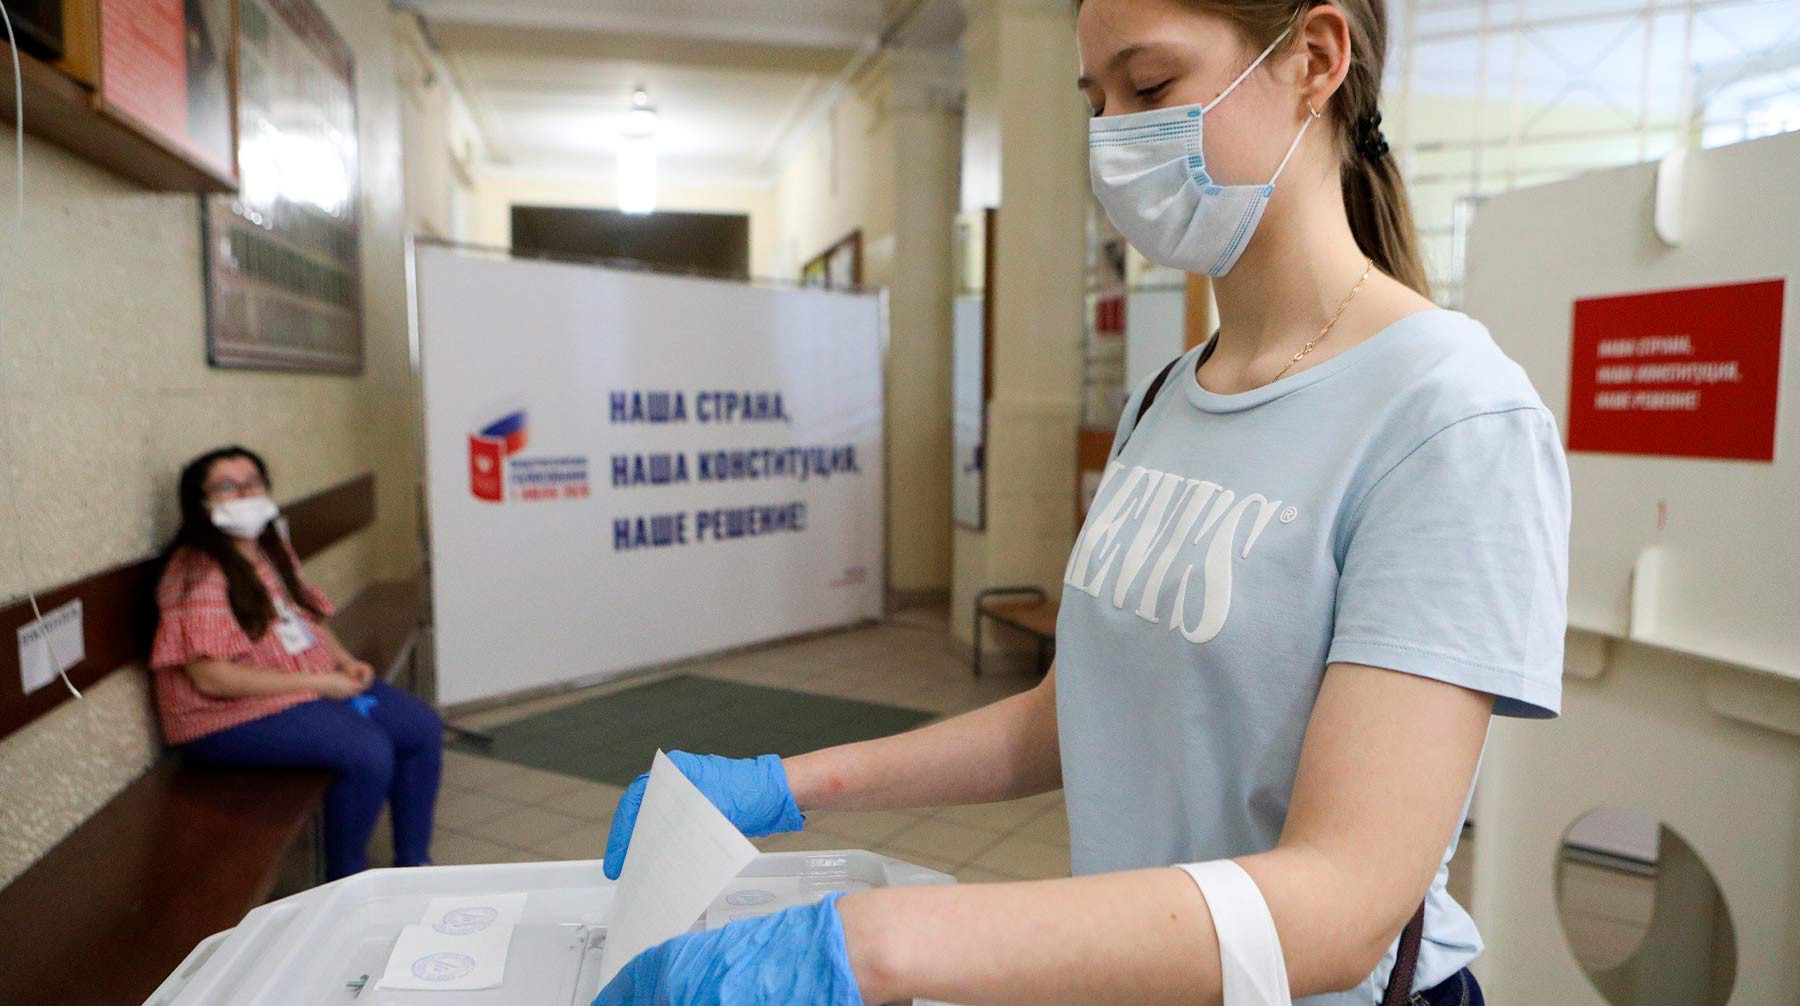 Dailystorm - Песков усомнился в существовании контроля за явкой сотрудников на голосование по Конституции